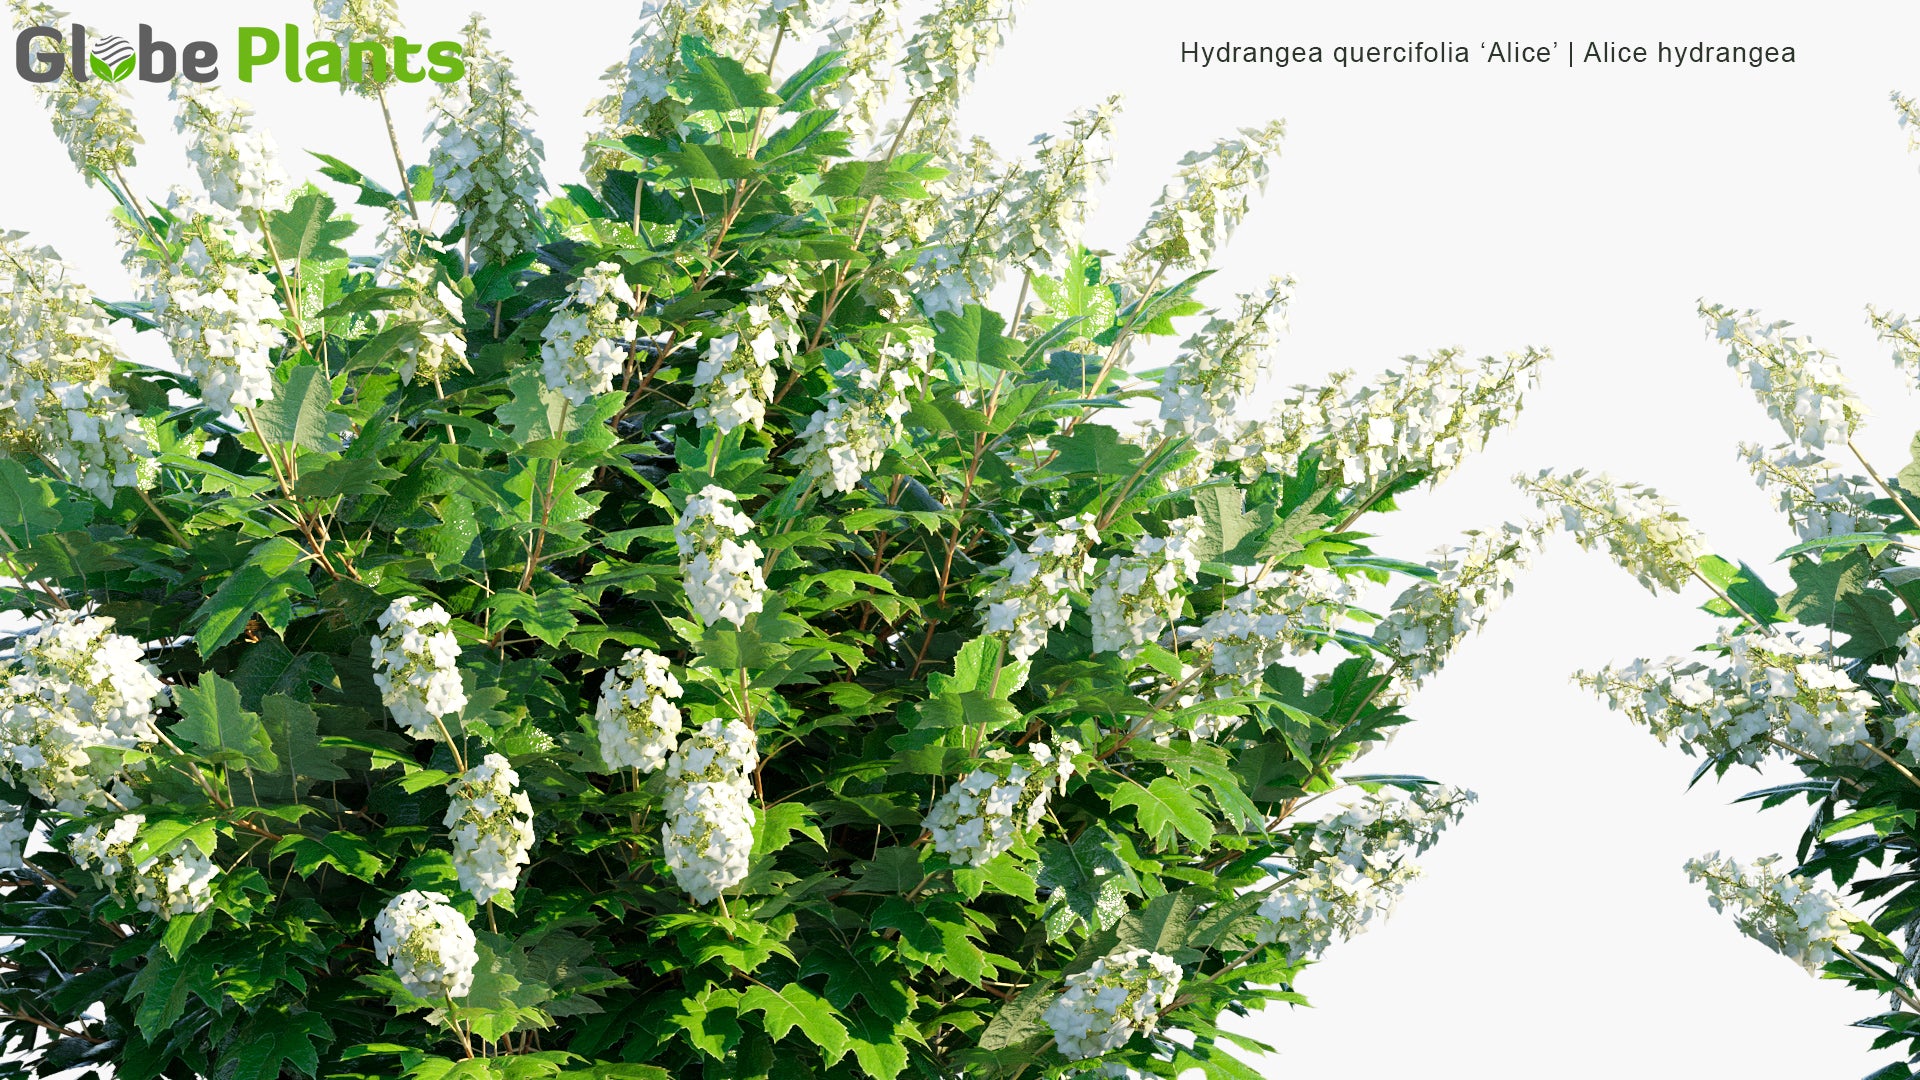 Hydrangea Quercifolia 'Alice' - Alice Hydrangea